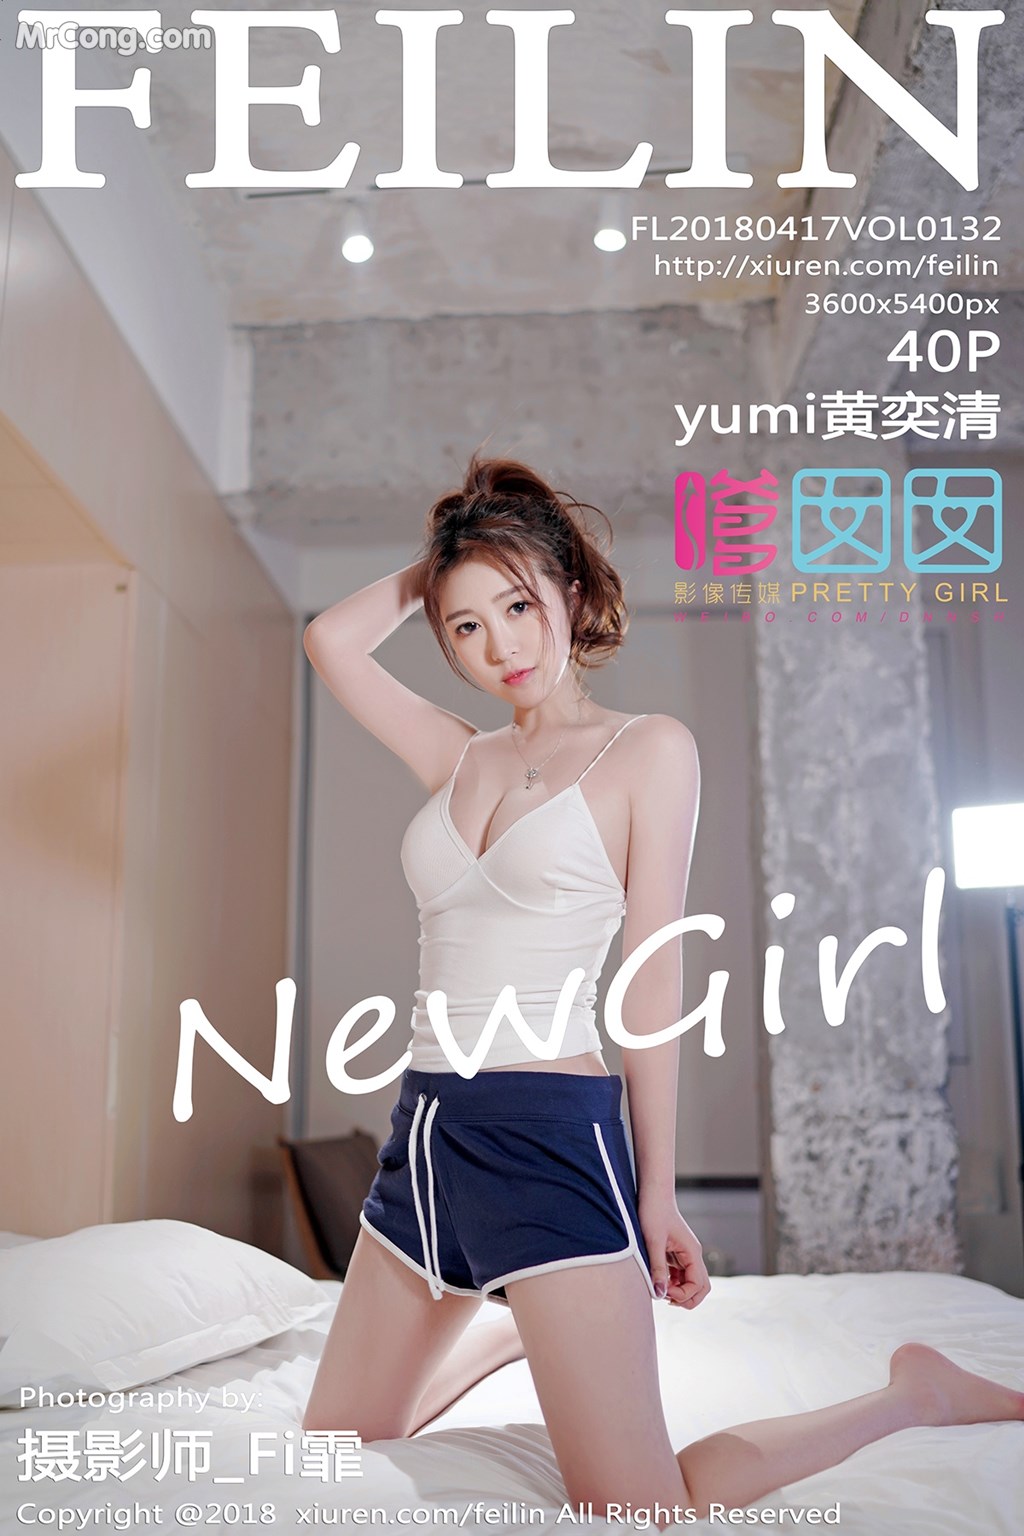 FEILIN Vol.132: Model Yumi 黄奕 清 (41 photos)